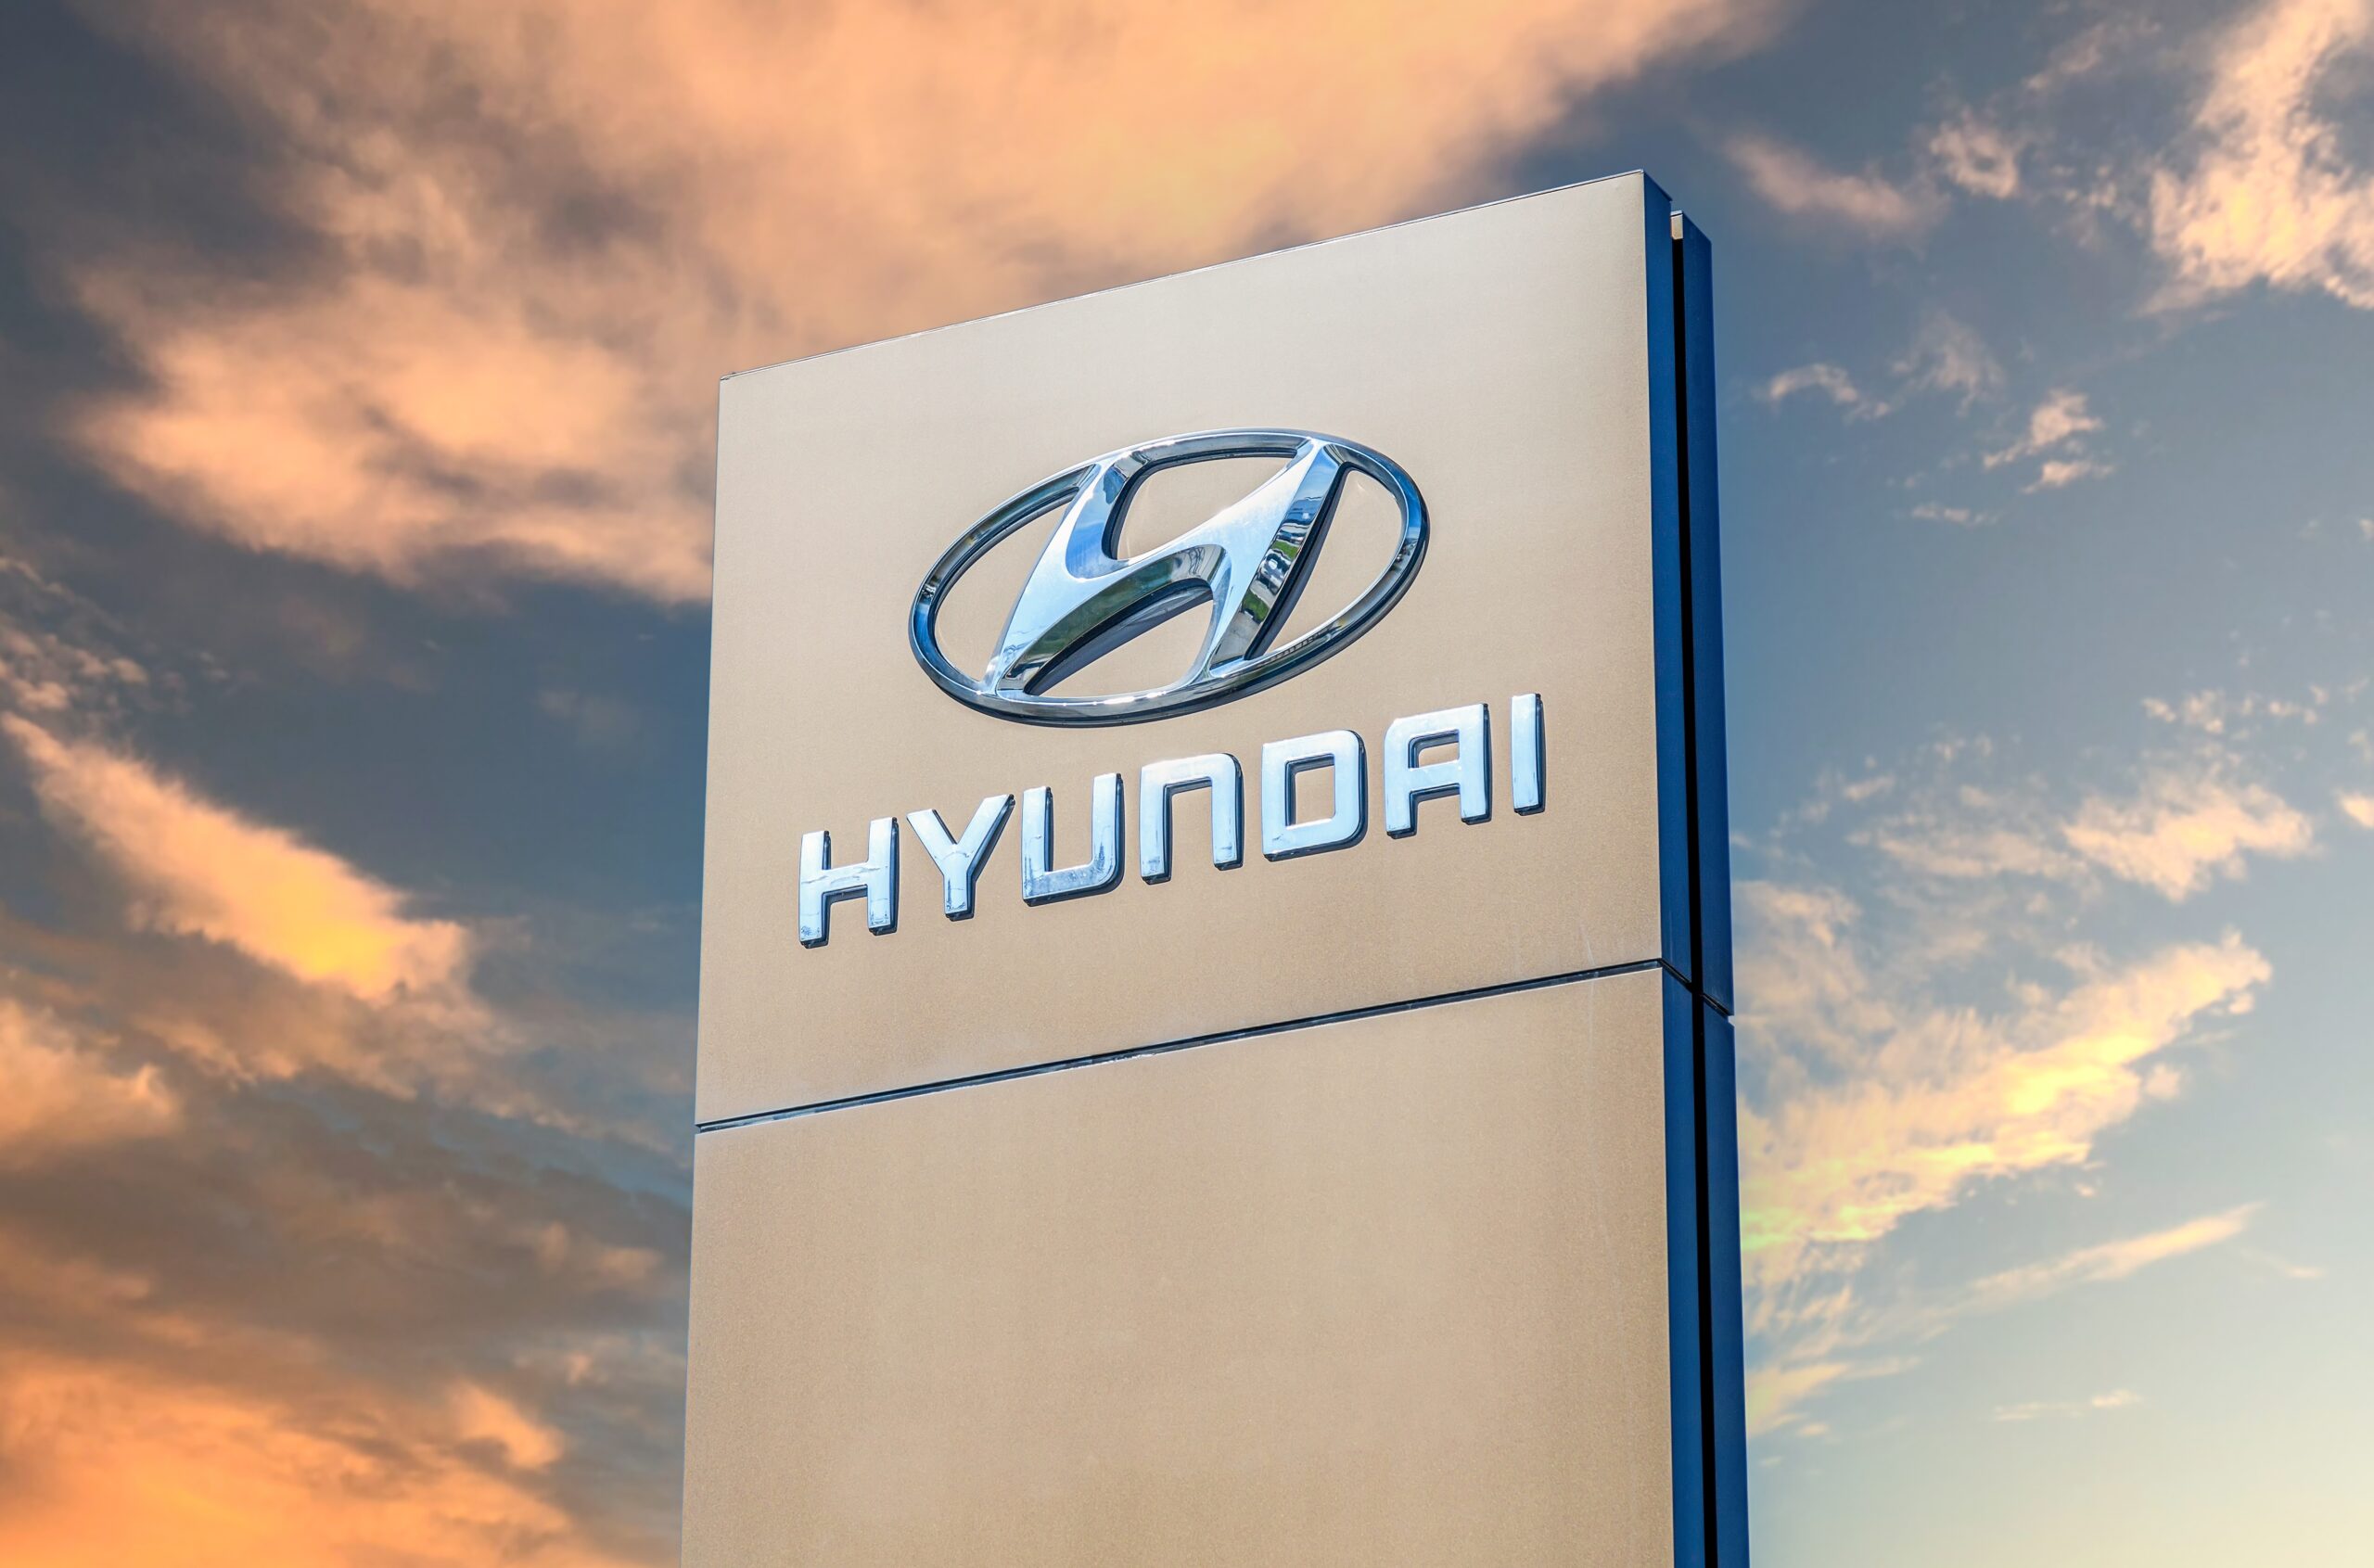 Inimigo do posto! Carro mais econômico da Hyundai faz 14,6 km/l